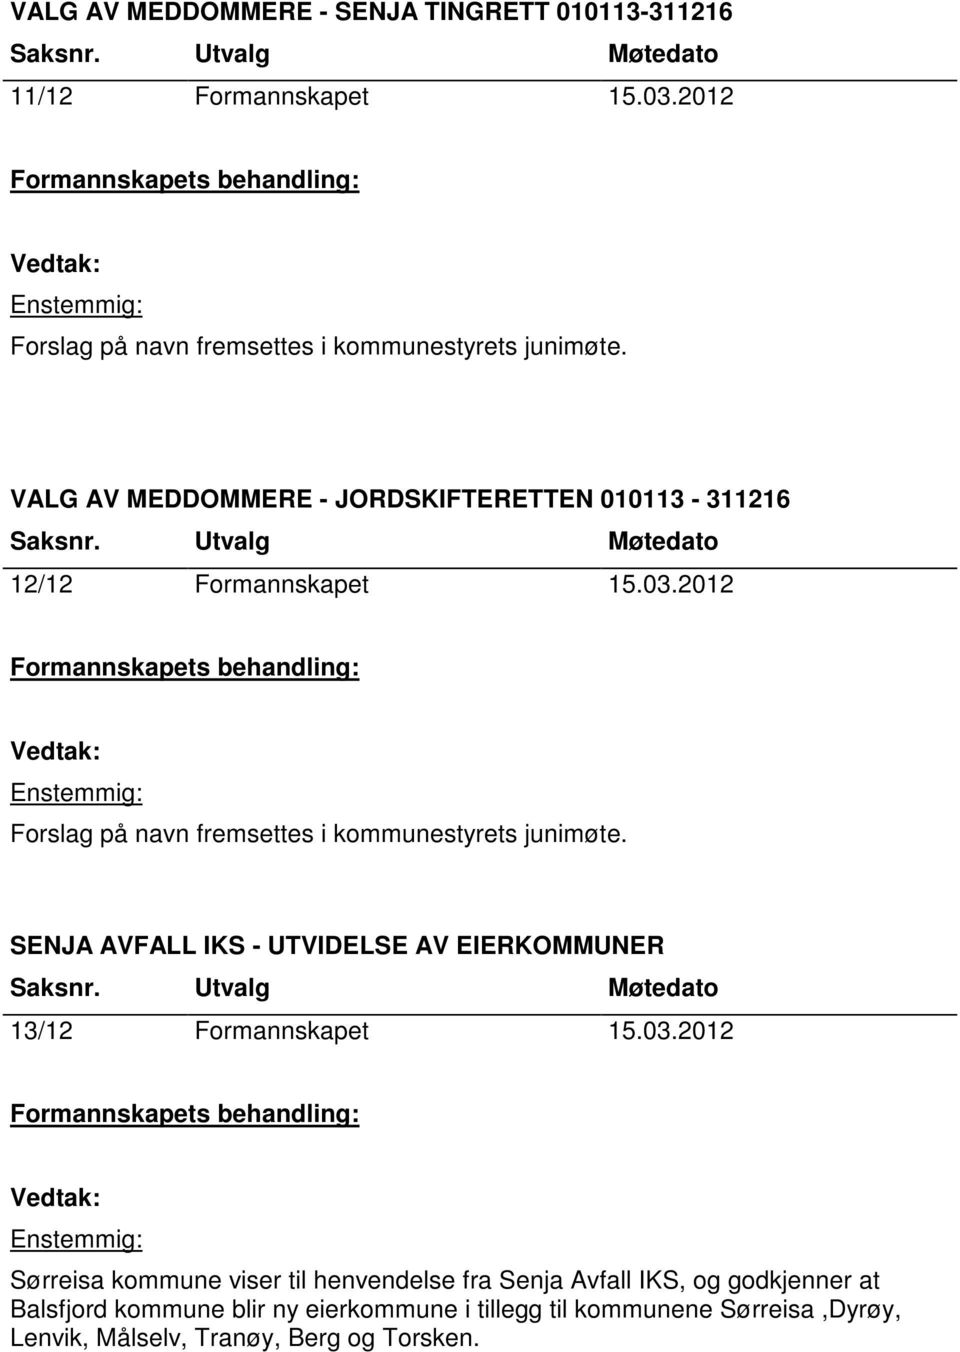 SENJA AVFALL IKS - UTVIDELSE AV EIERKOMMUNER 13/12 Formannskapet 15.03.